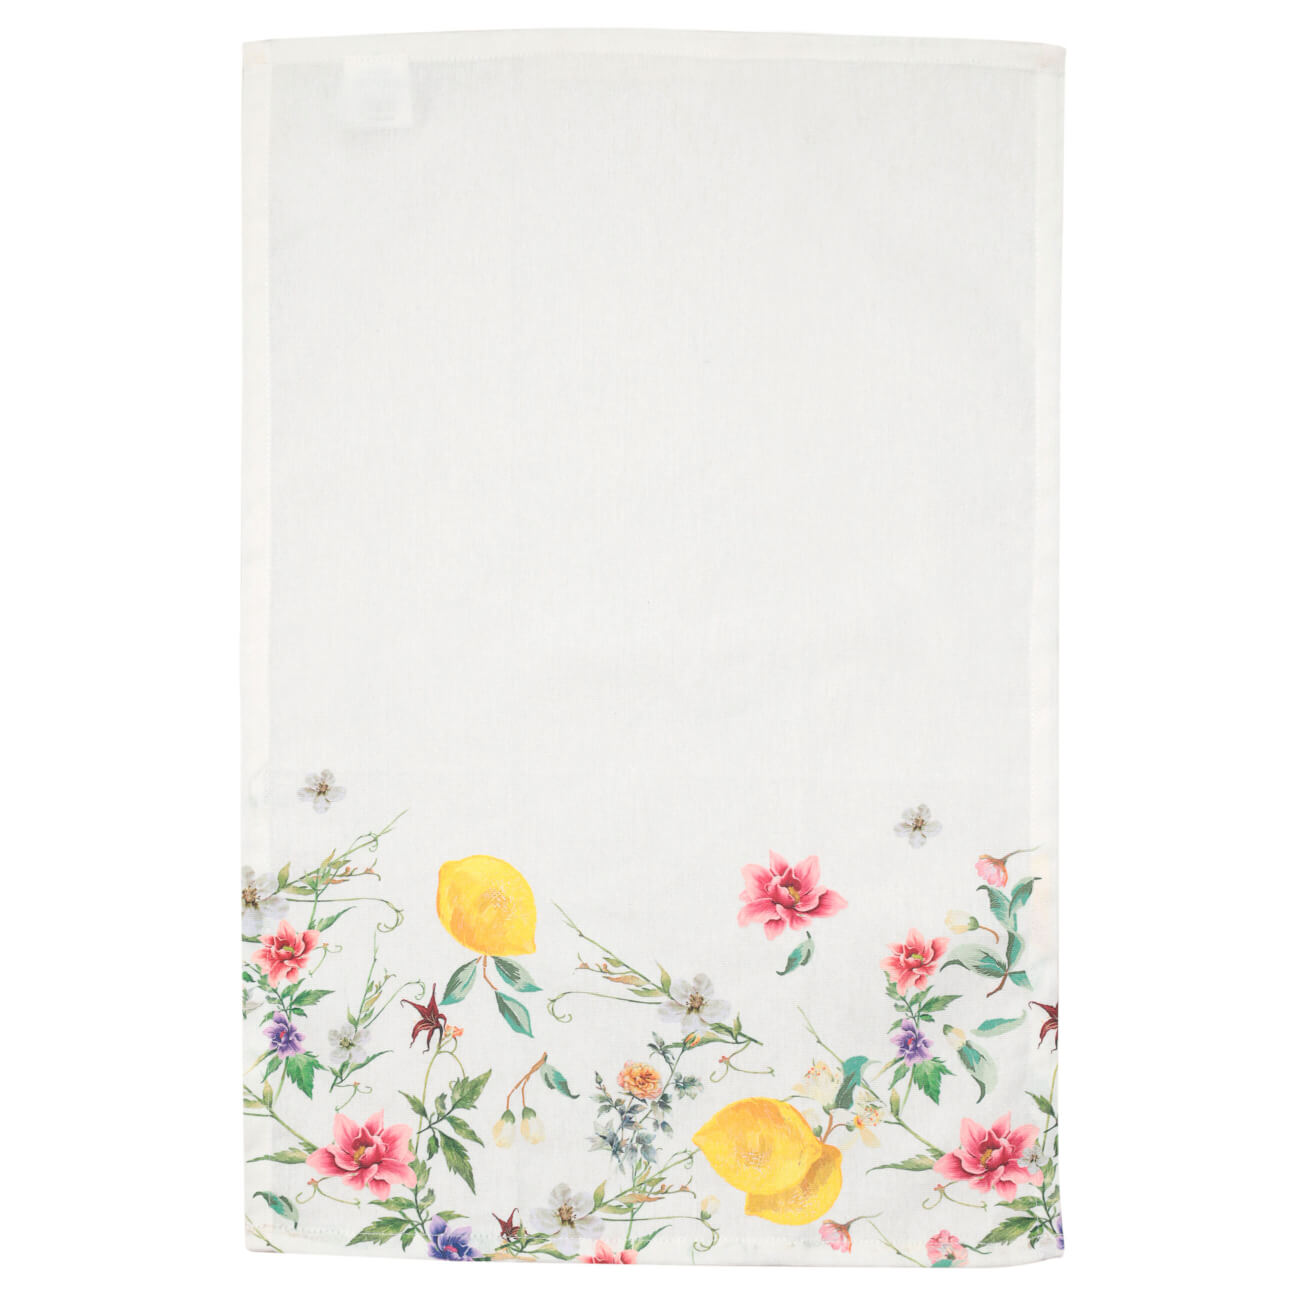 Полотенце кухонное, 40x60 см, хлопок, белое, Цветы и лимоны, Sicily in bloom полотенце вечер бриз р 40х70